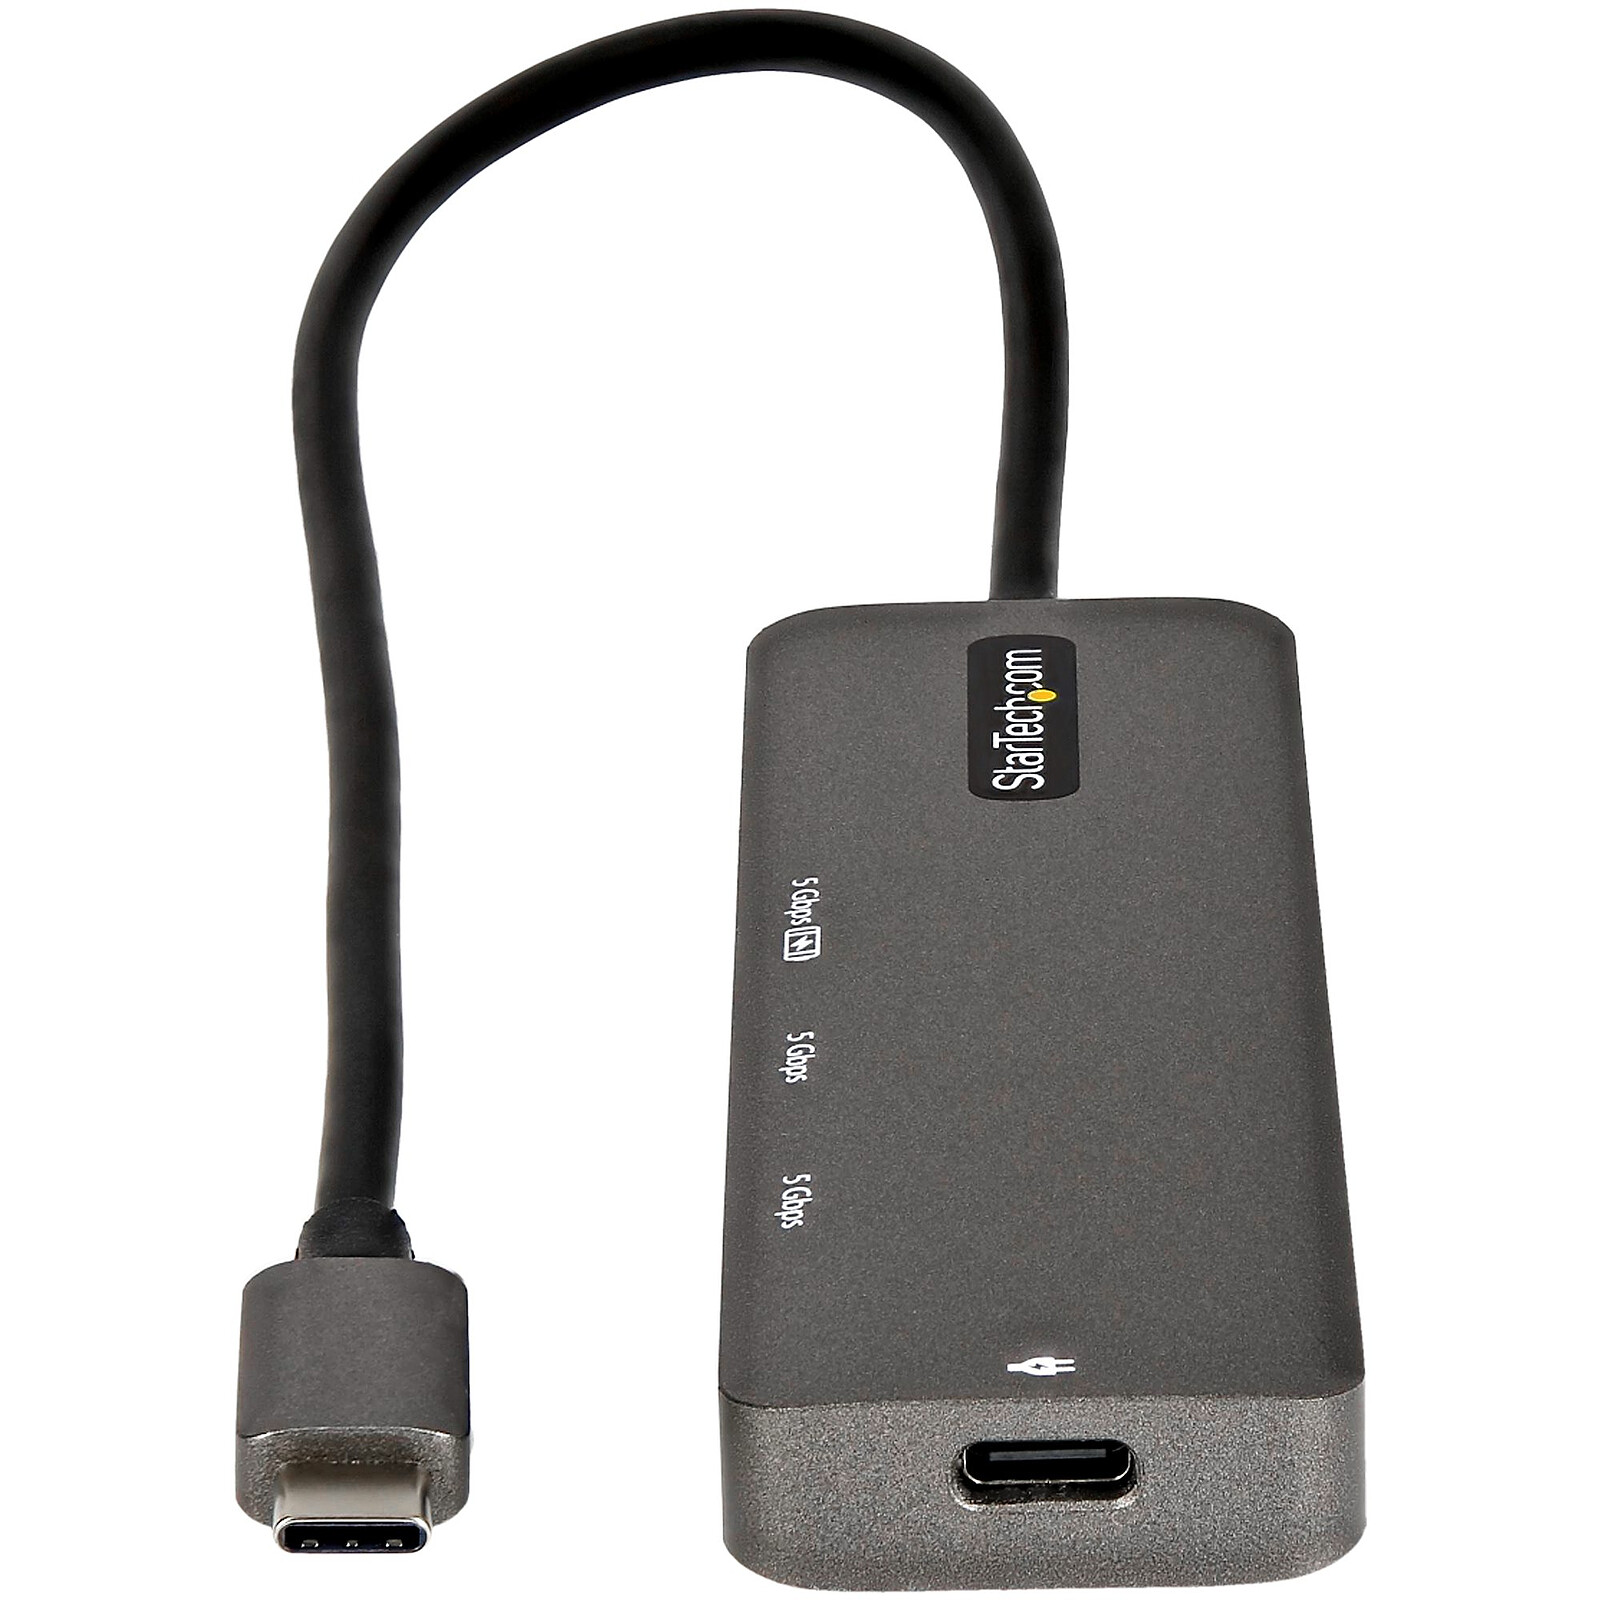 ADAPTADOR TARGUS HUB DE USB-C A 4 PUERTOS USB 3.0